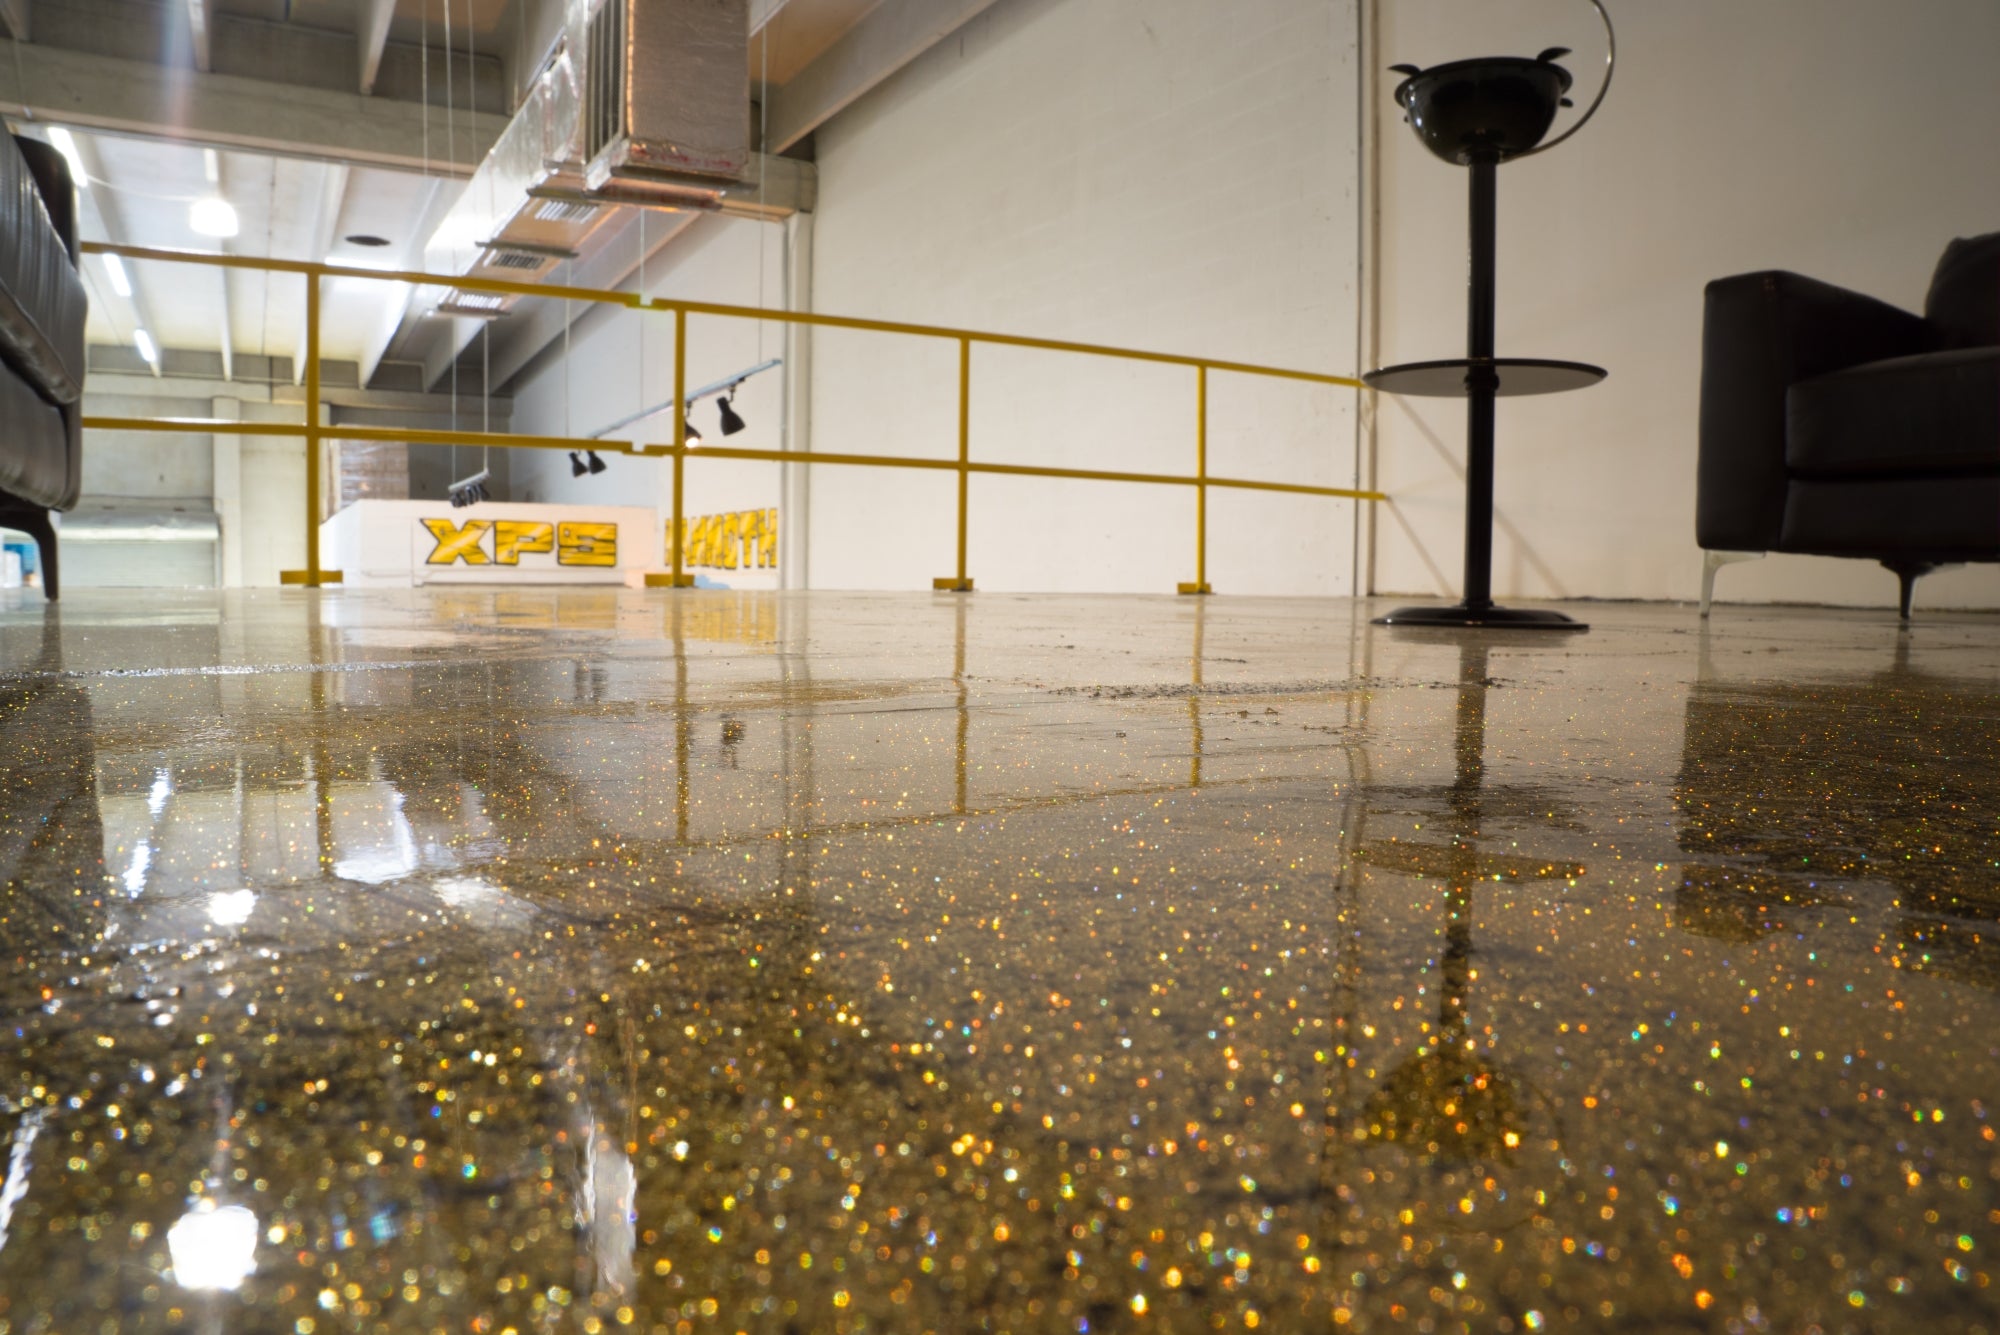 Gold glitter epoxy floor finish | Xtreme Polishing Systems